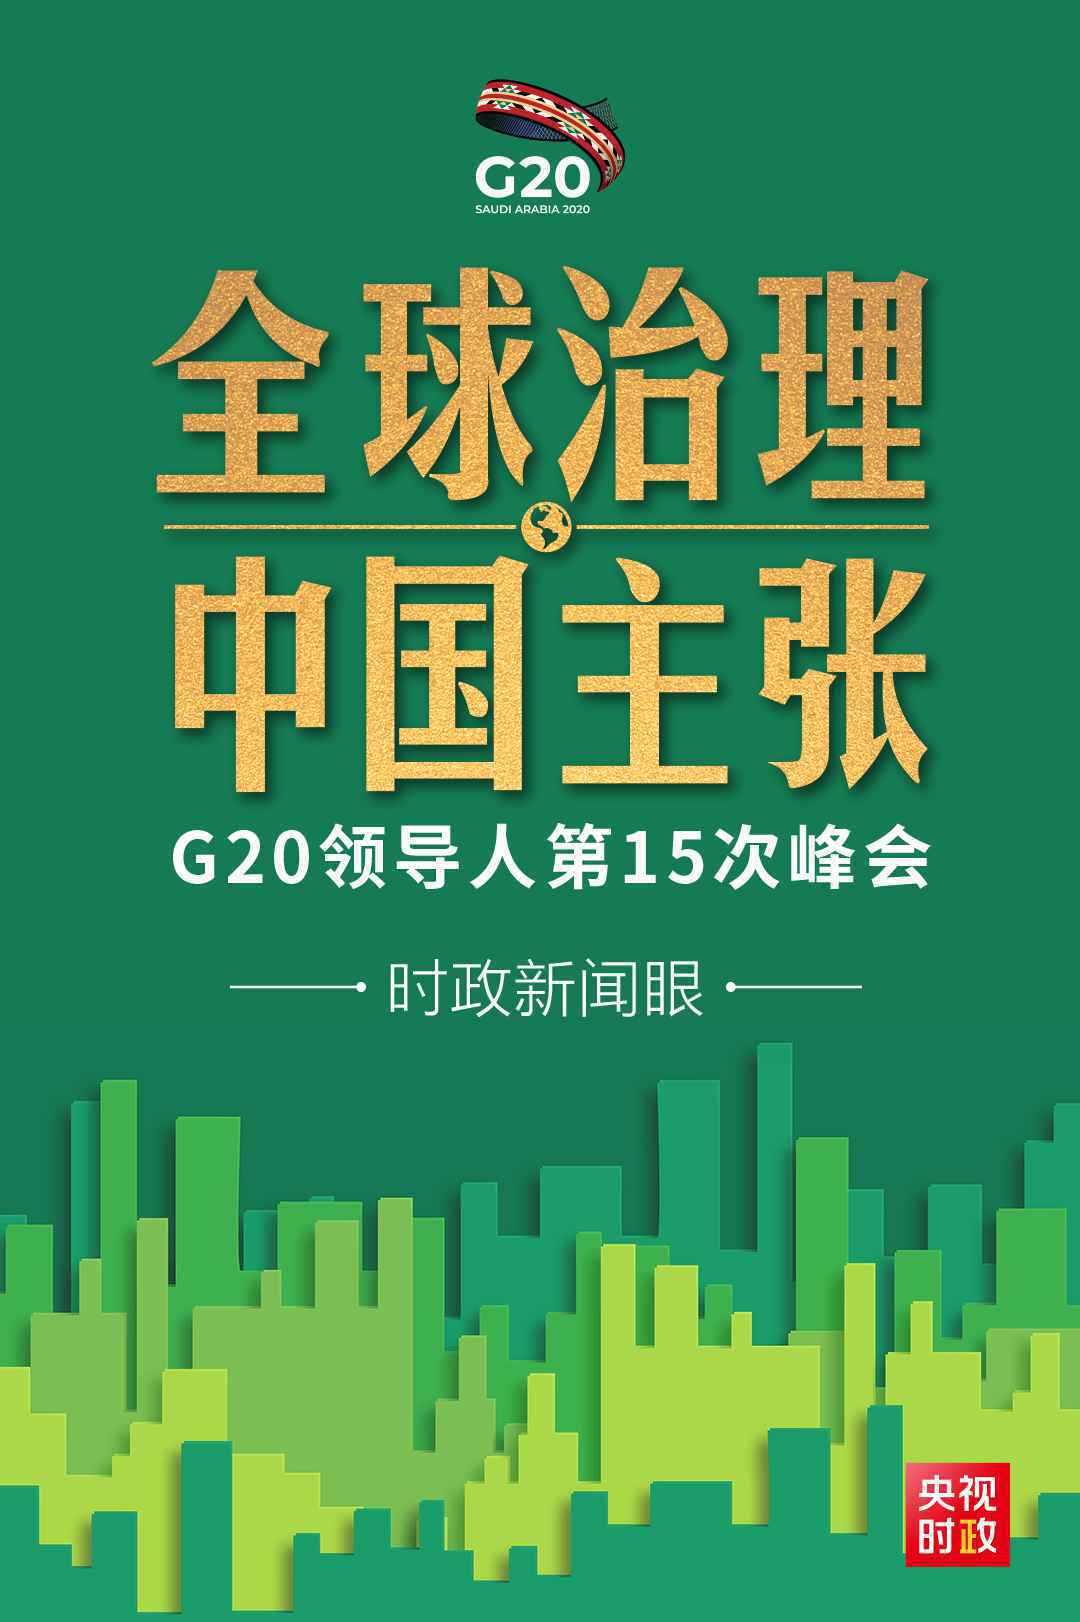 时政新闻眼丨后疫情时代G20如何引领全球治理，习近平提出中国主张